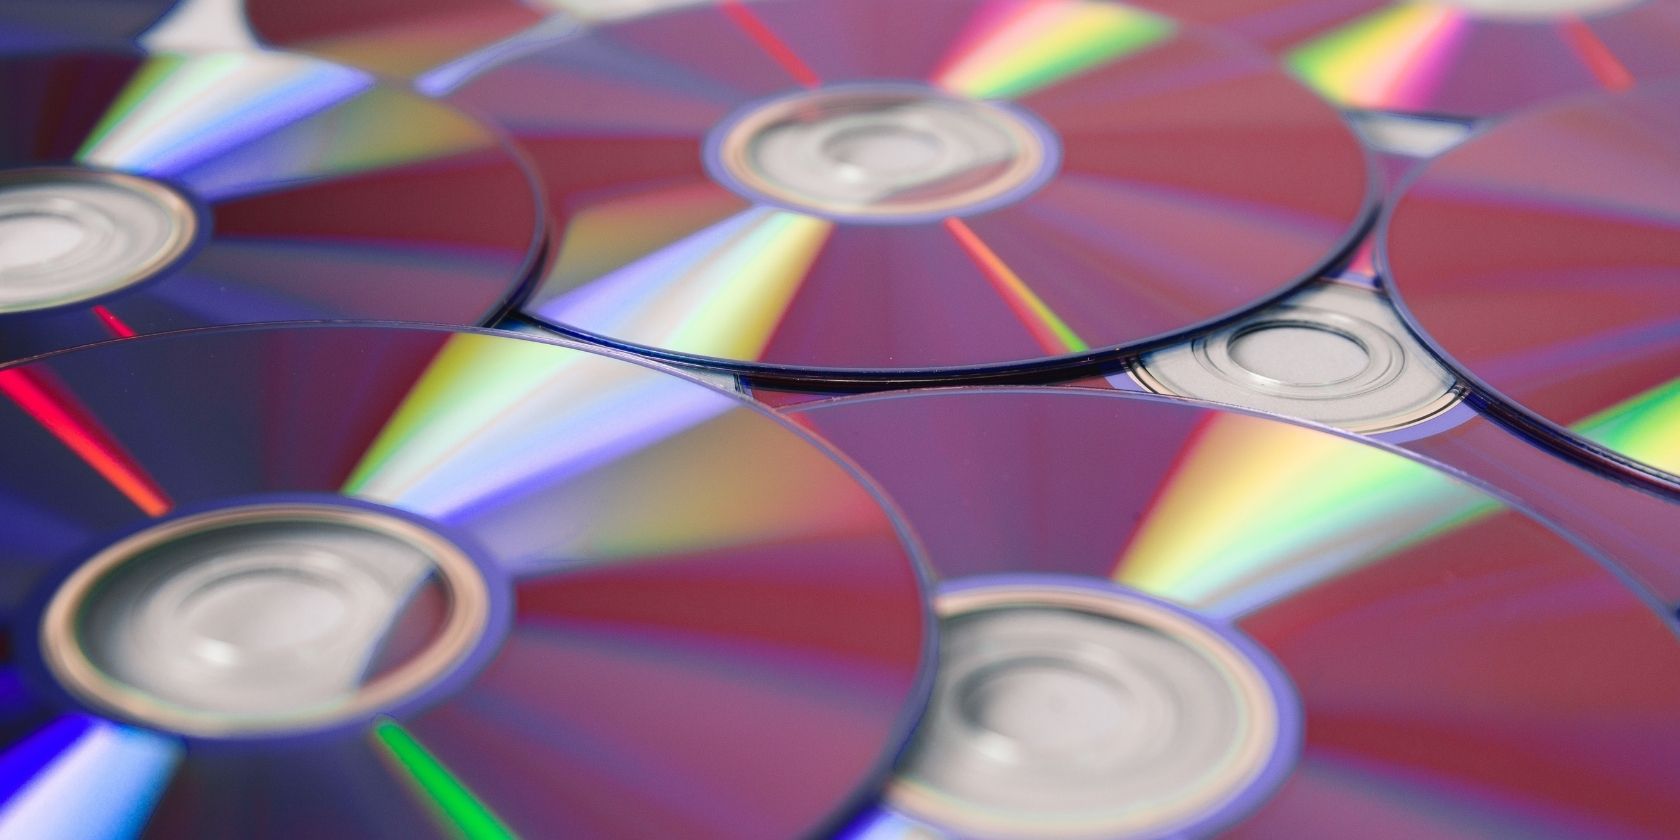 Compact-discs